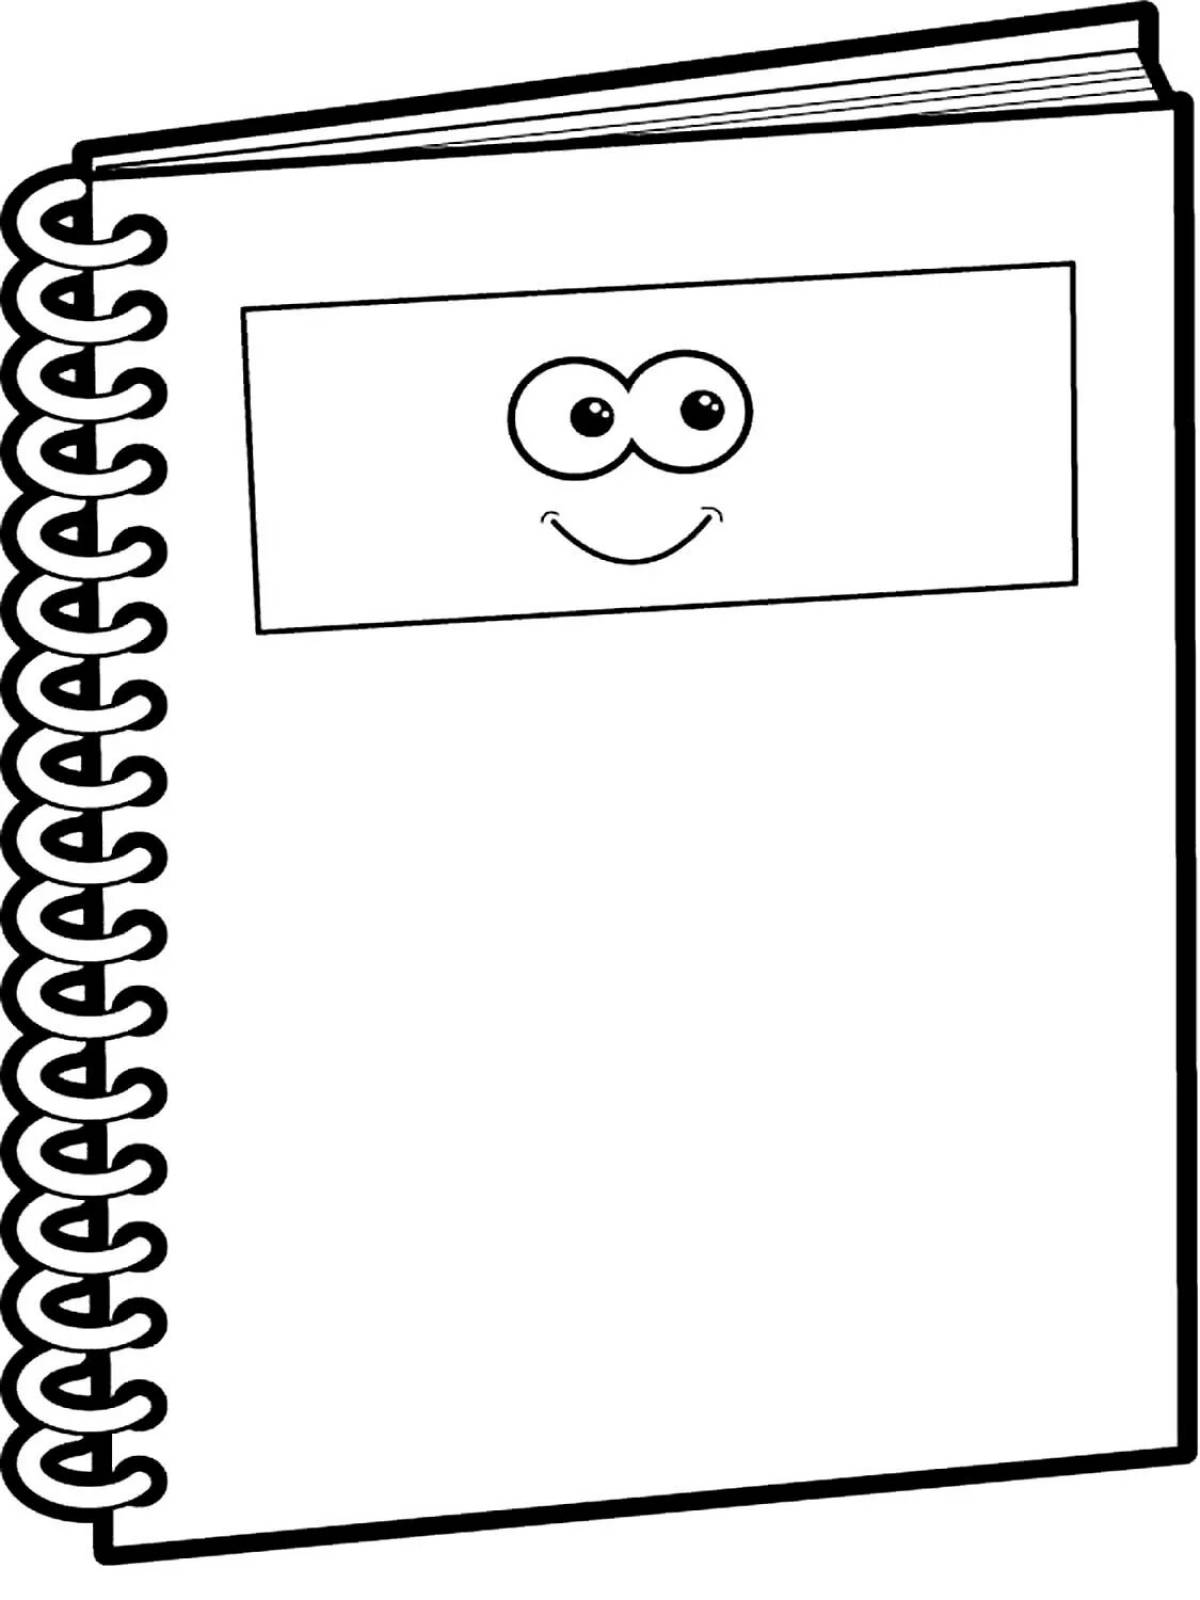 Children's notebook #5